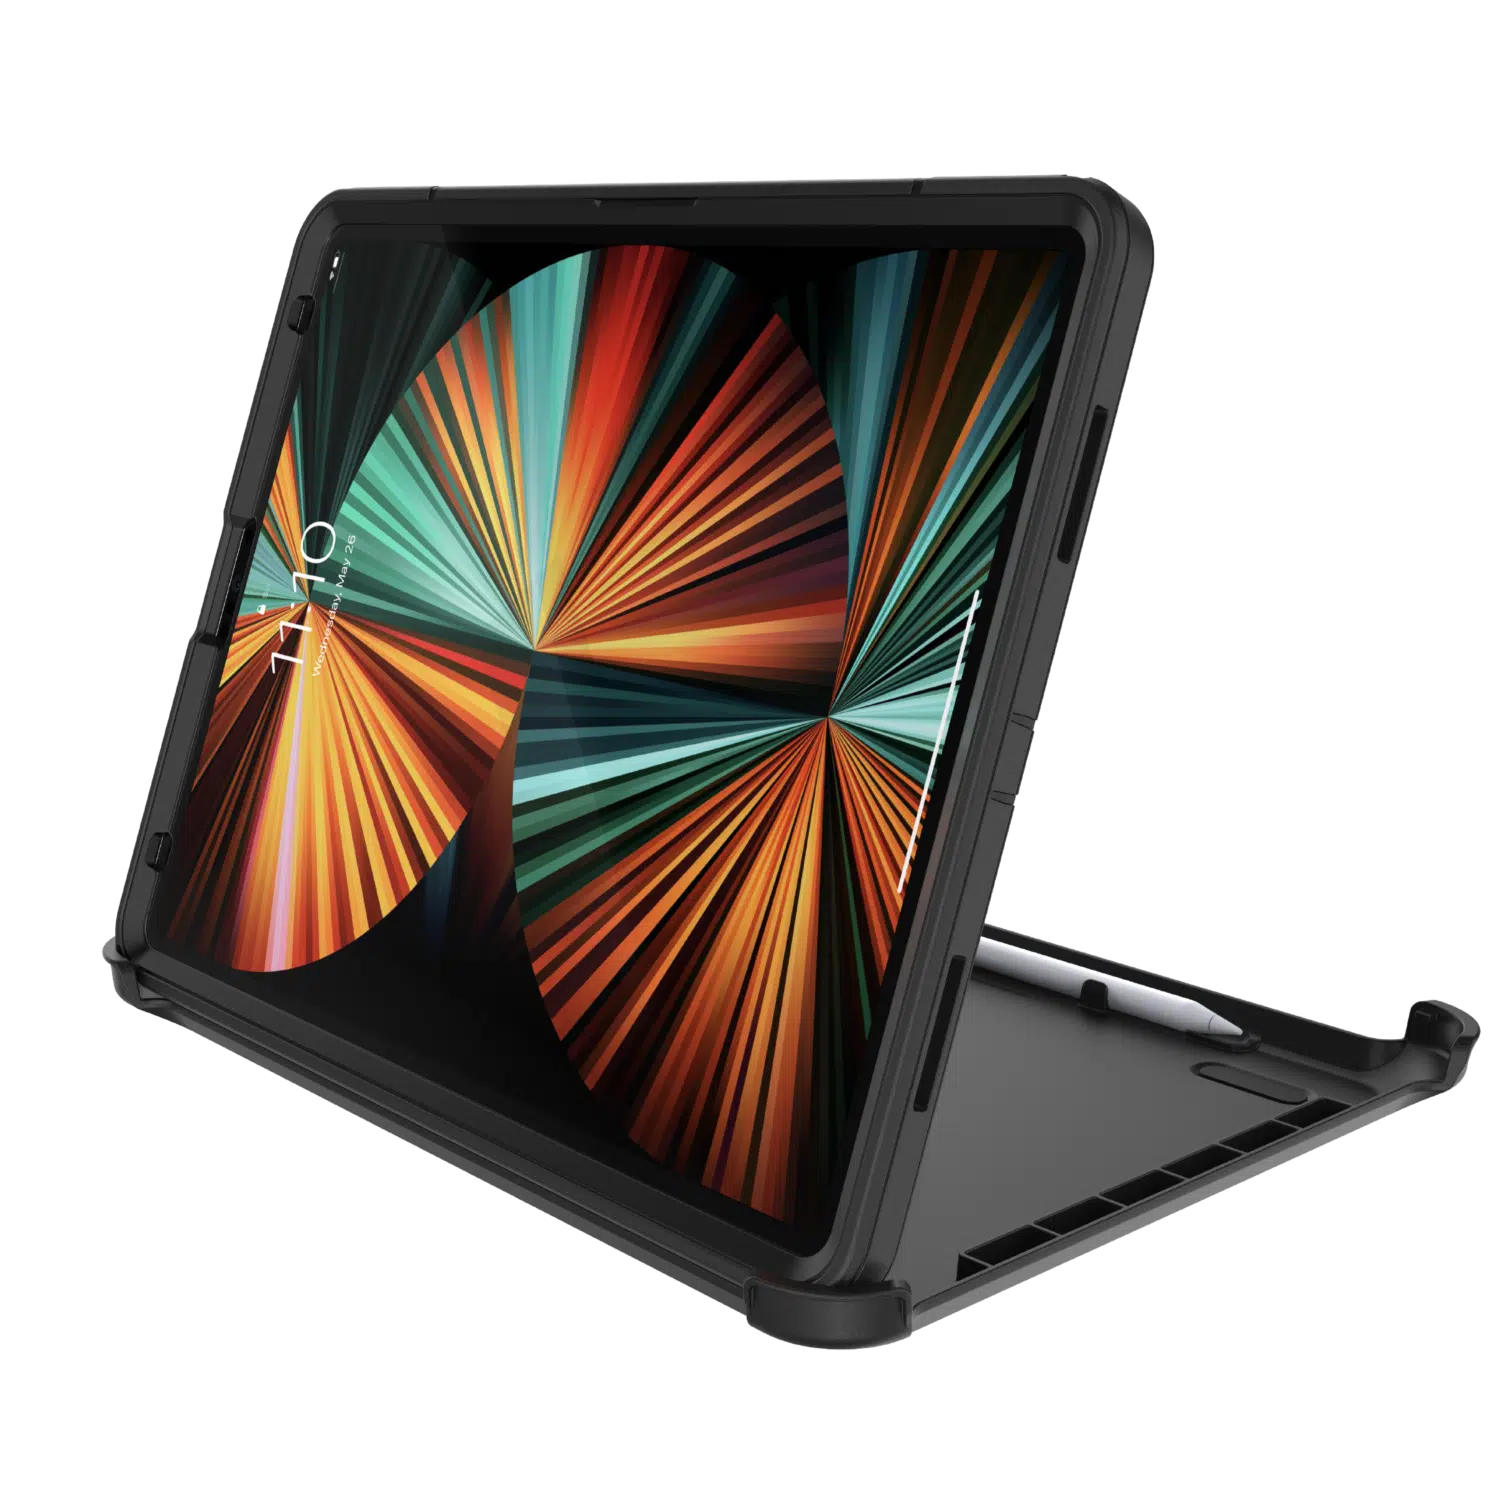 เคส OtterBox รุ่น Defender - iPad Pro 12.9" (5th Gen 2021) - สีดำ